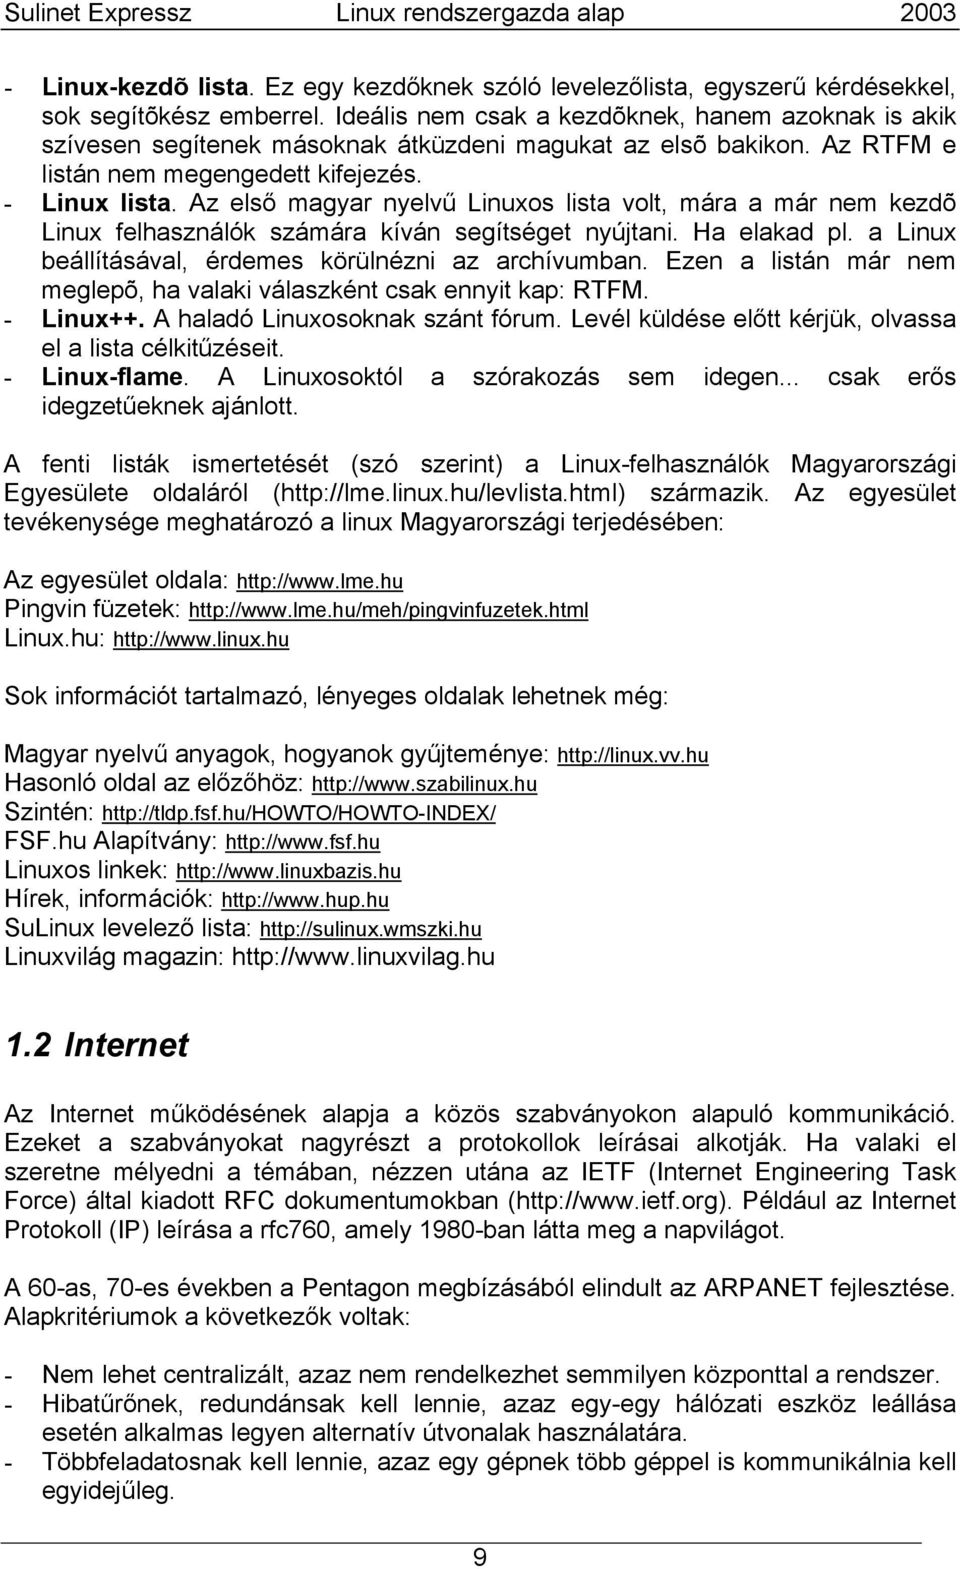 Az első magyar nyelvű Linuxos lista volt, mára a már nem kezdõ Linux felhasználók számára kíván segítséget nyújtani. Ha elakad pl. a Linux beállításával, érdemes körülnézni az archívumban.